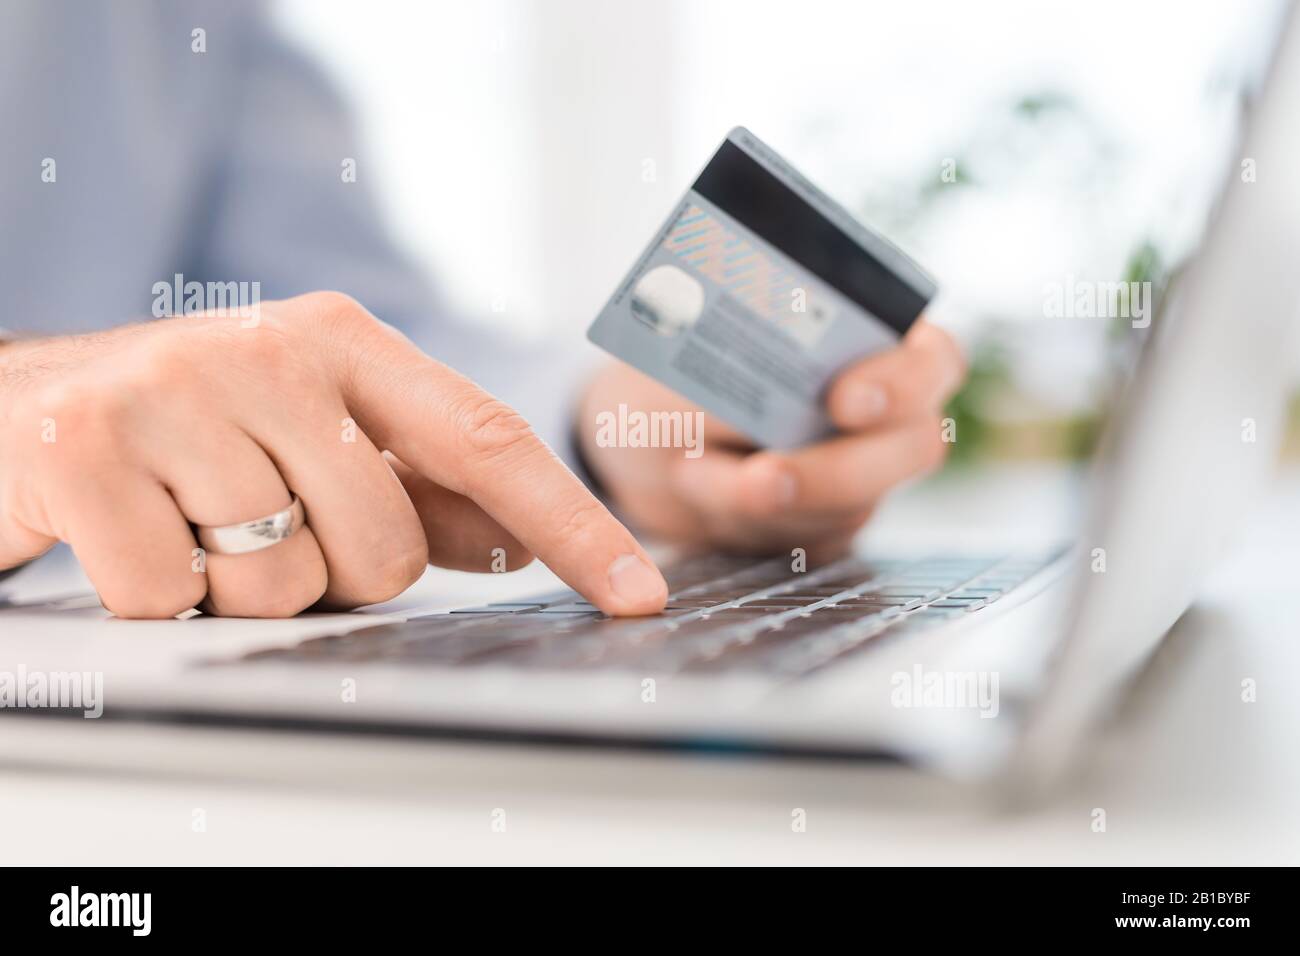 Hände mit Kreditkarte und Laptop. Online-Zahlungs- und Einkaufskonzepte. Stockfoto